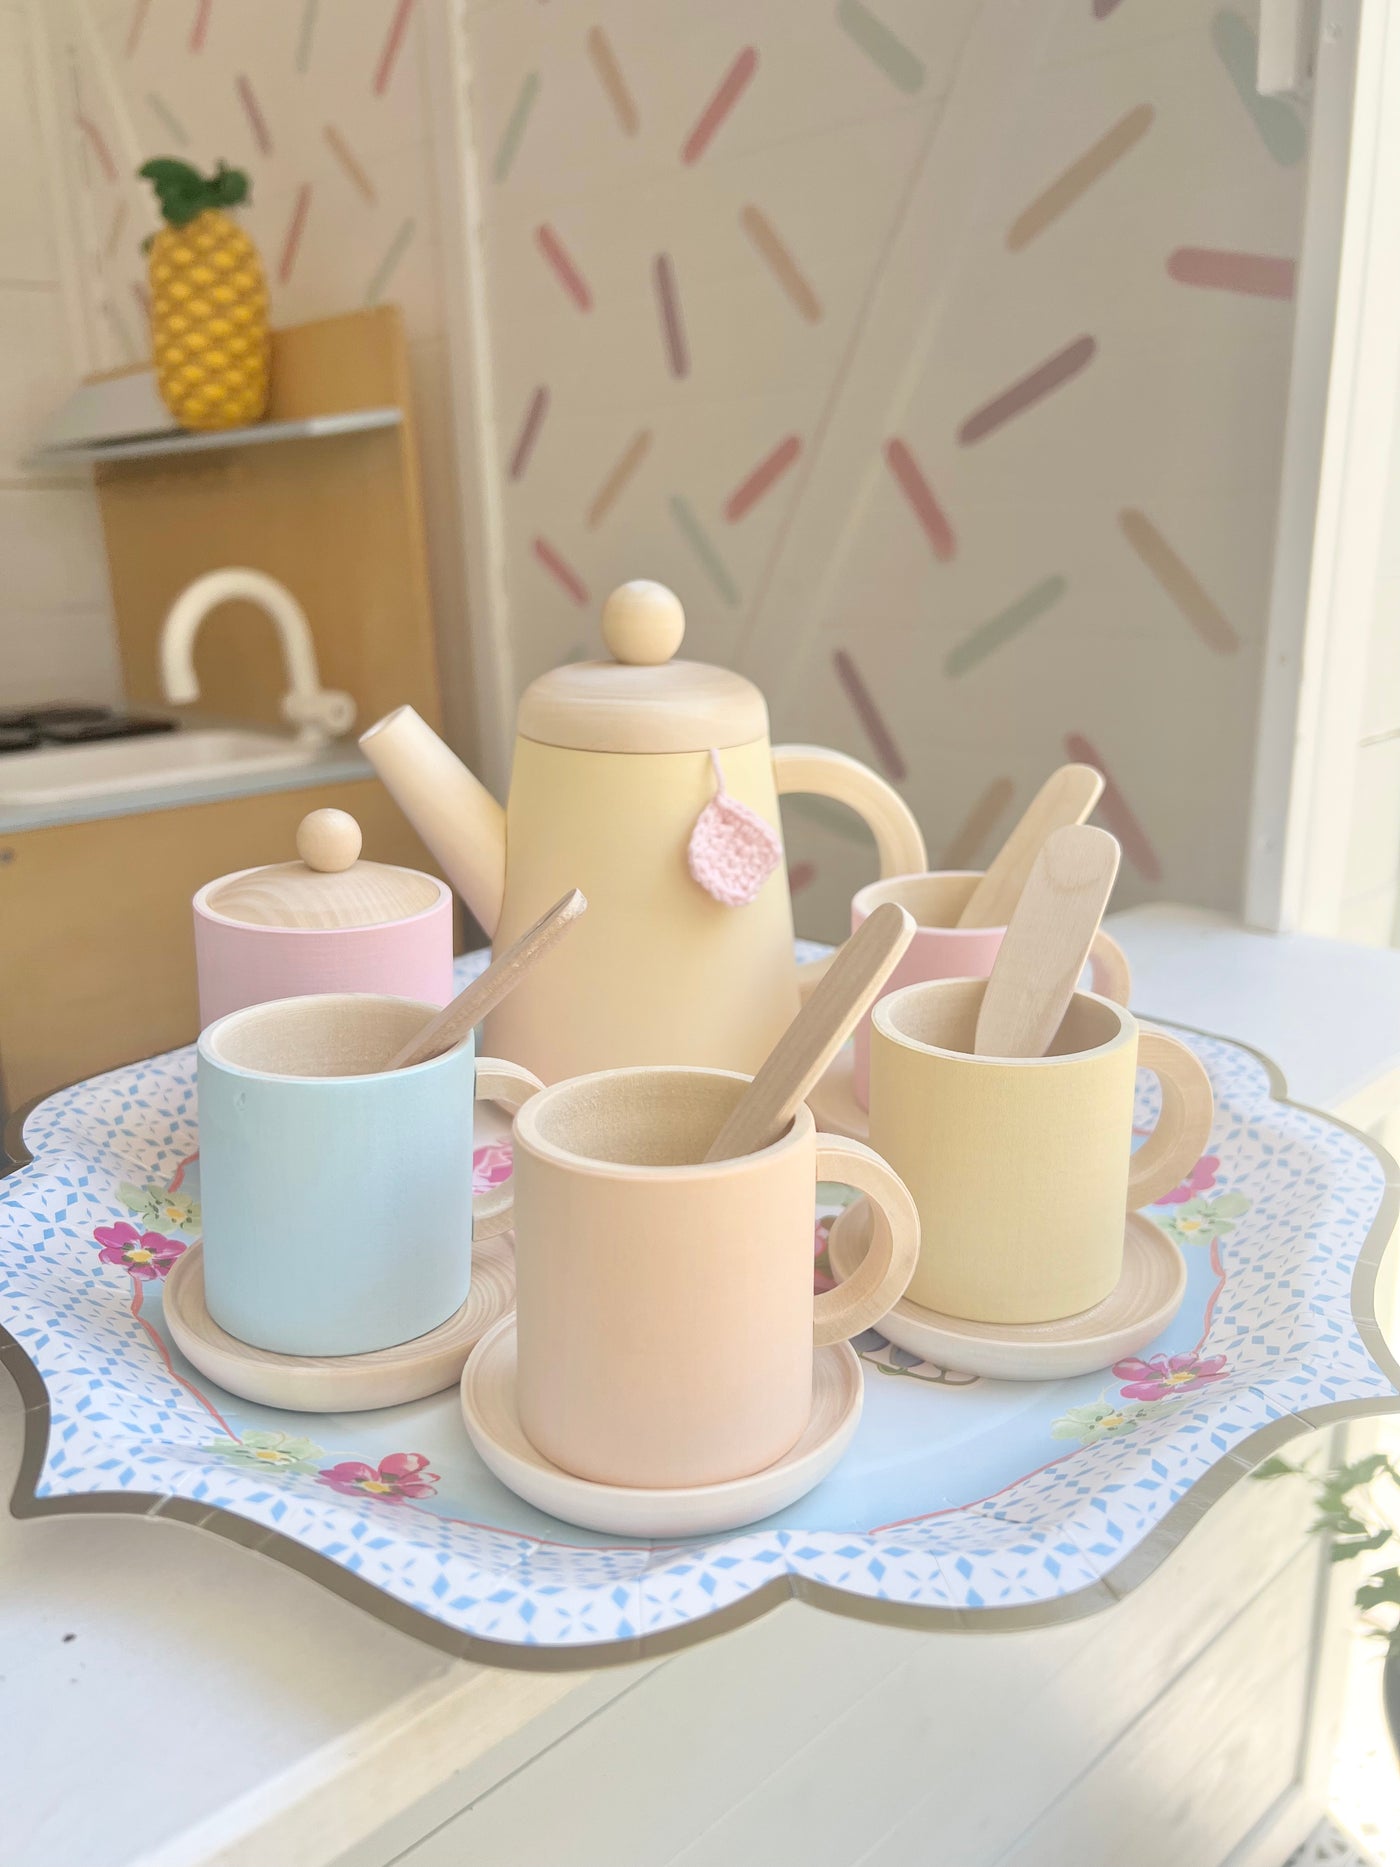 Pastel Dreams Wooden Toy Tea set | Hand painted, 10 piece set